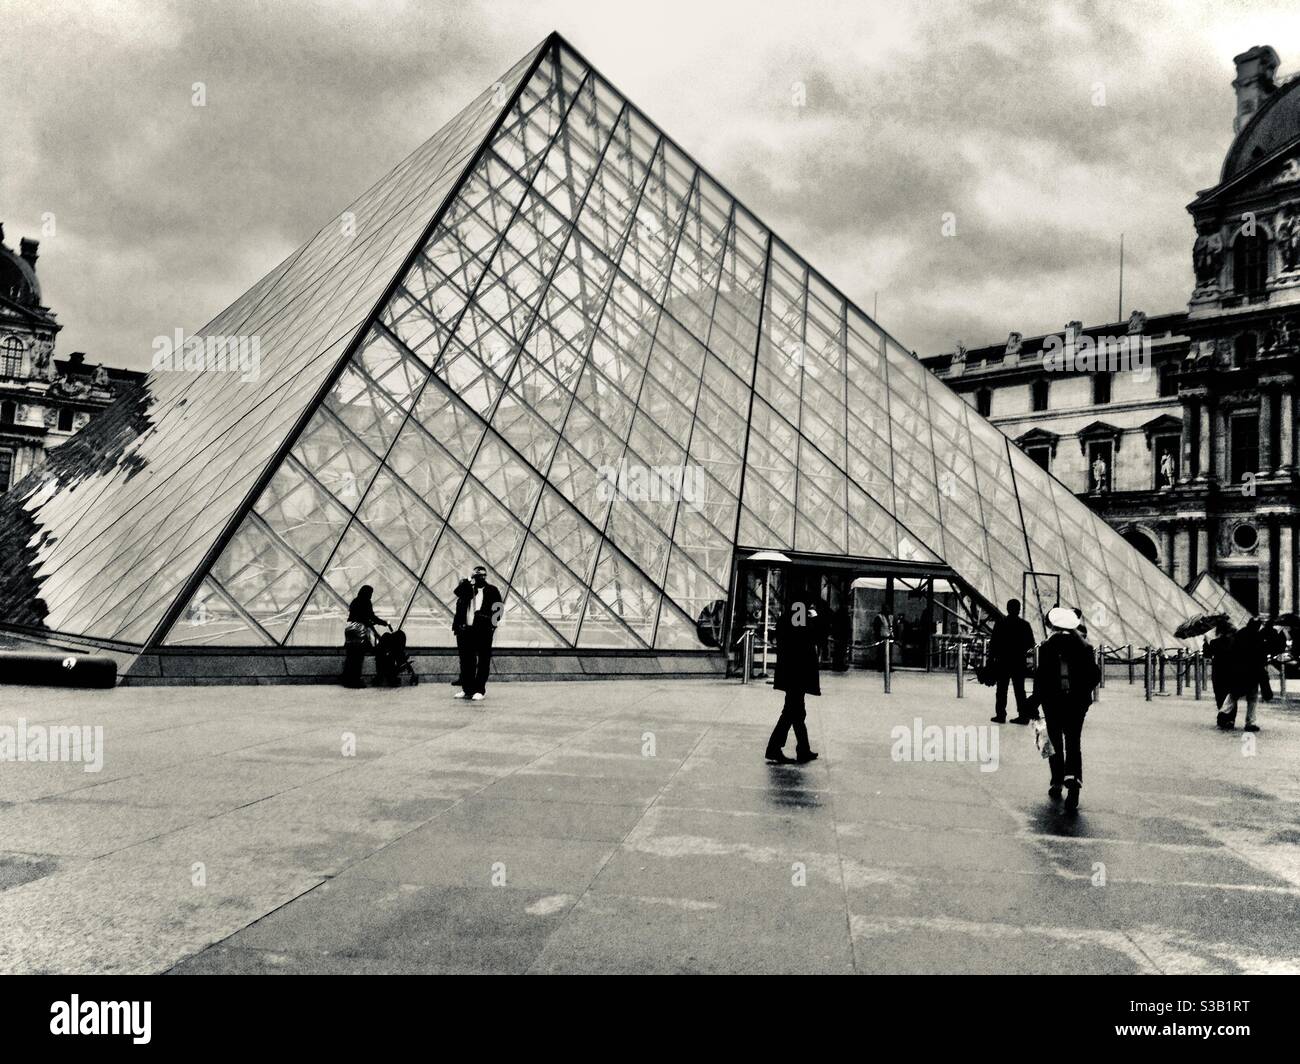 Fotografía monocromática de la pirámide del Louvre diseñada por IM Pei, París, Francia. Foto de stock